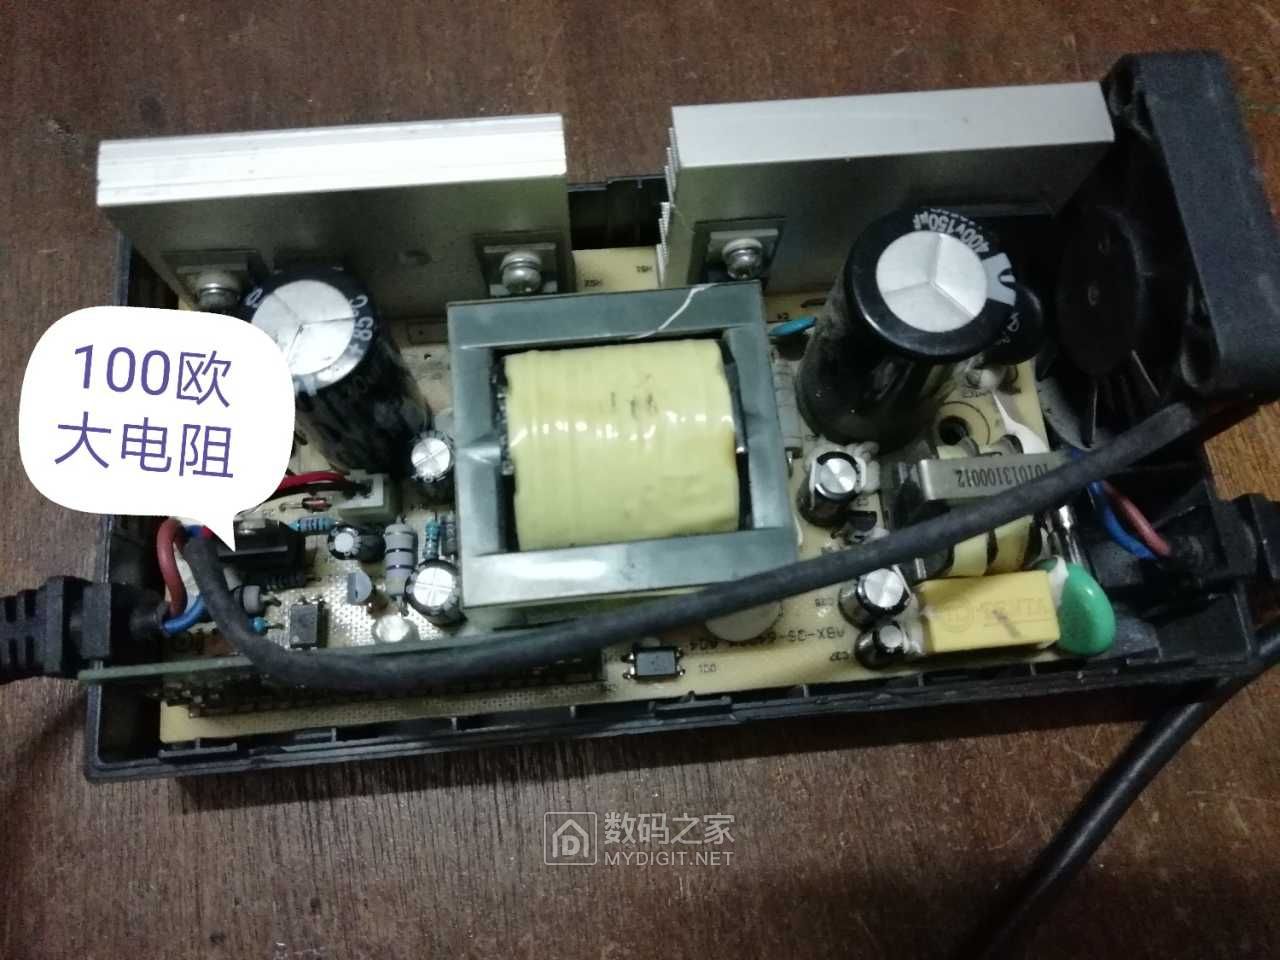 记录一台电动车充电器维修(yuanchxing)